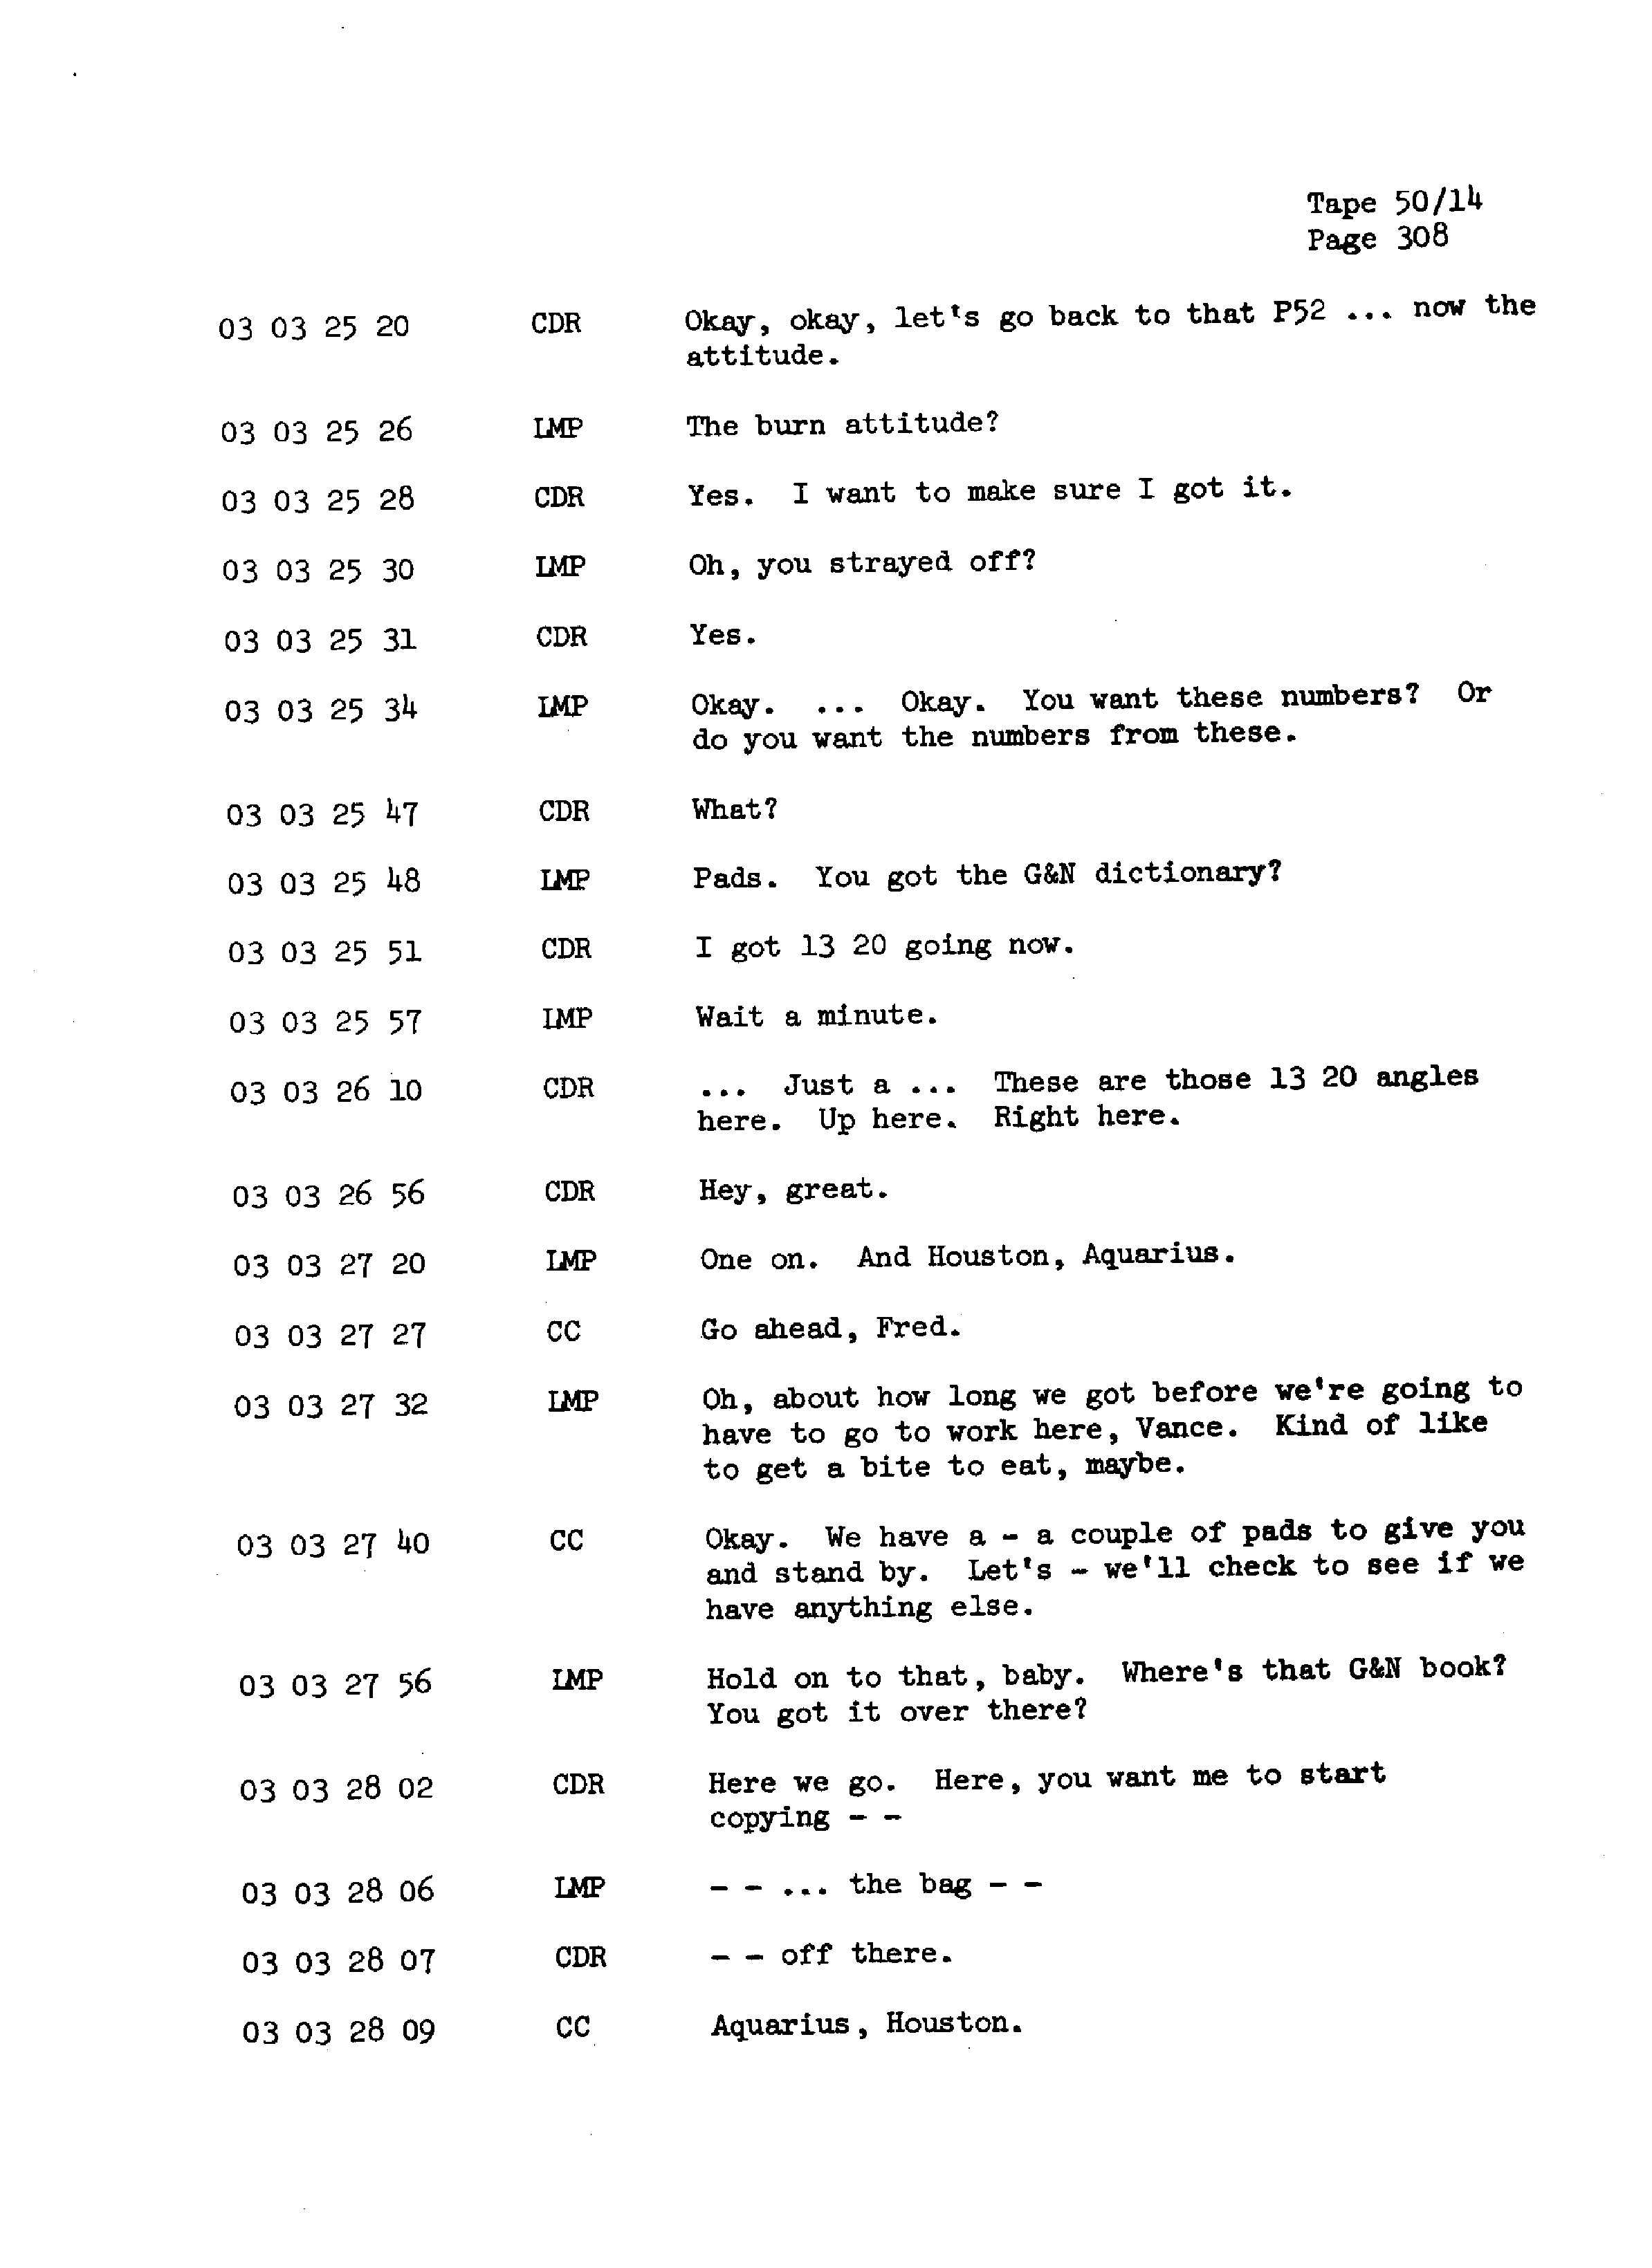 Page 315 of Apollo 13’s original transcript